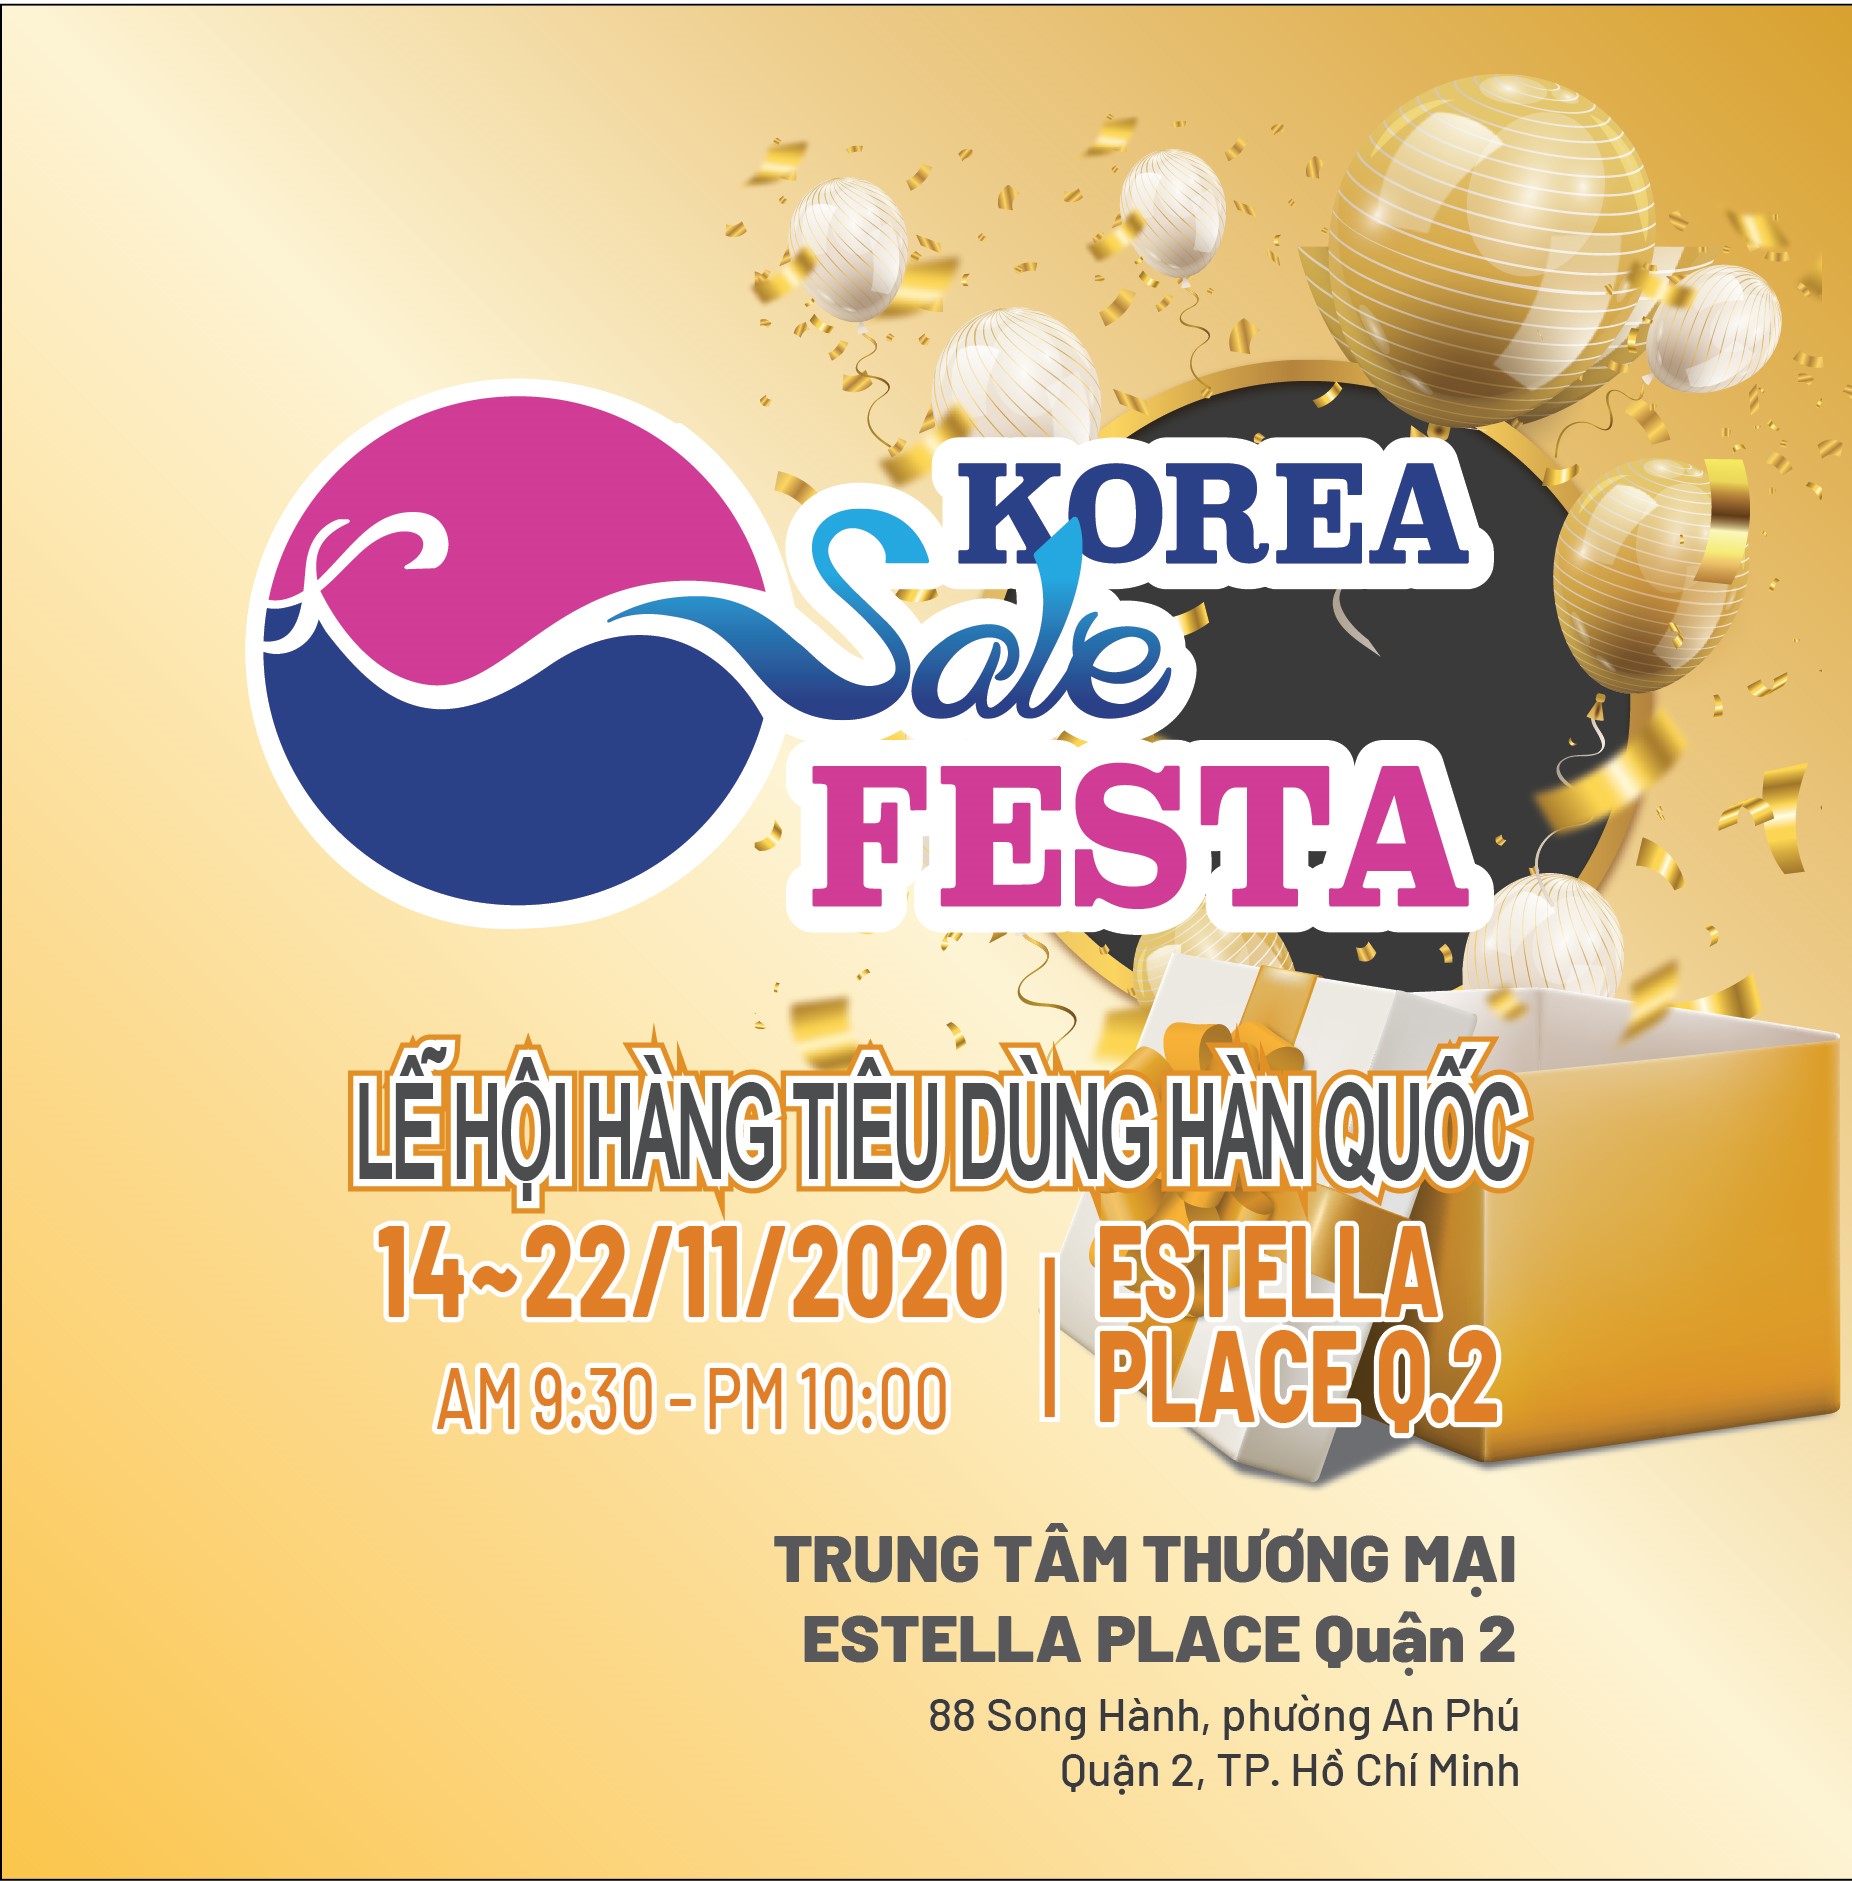 KOREA SALE FESTA 2020